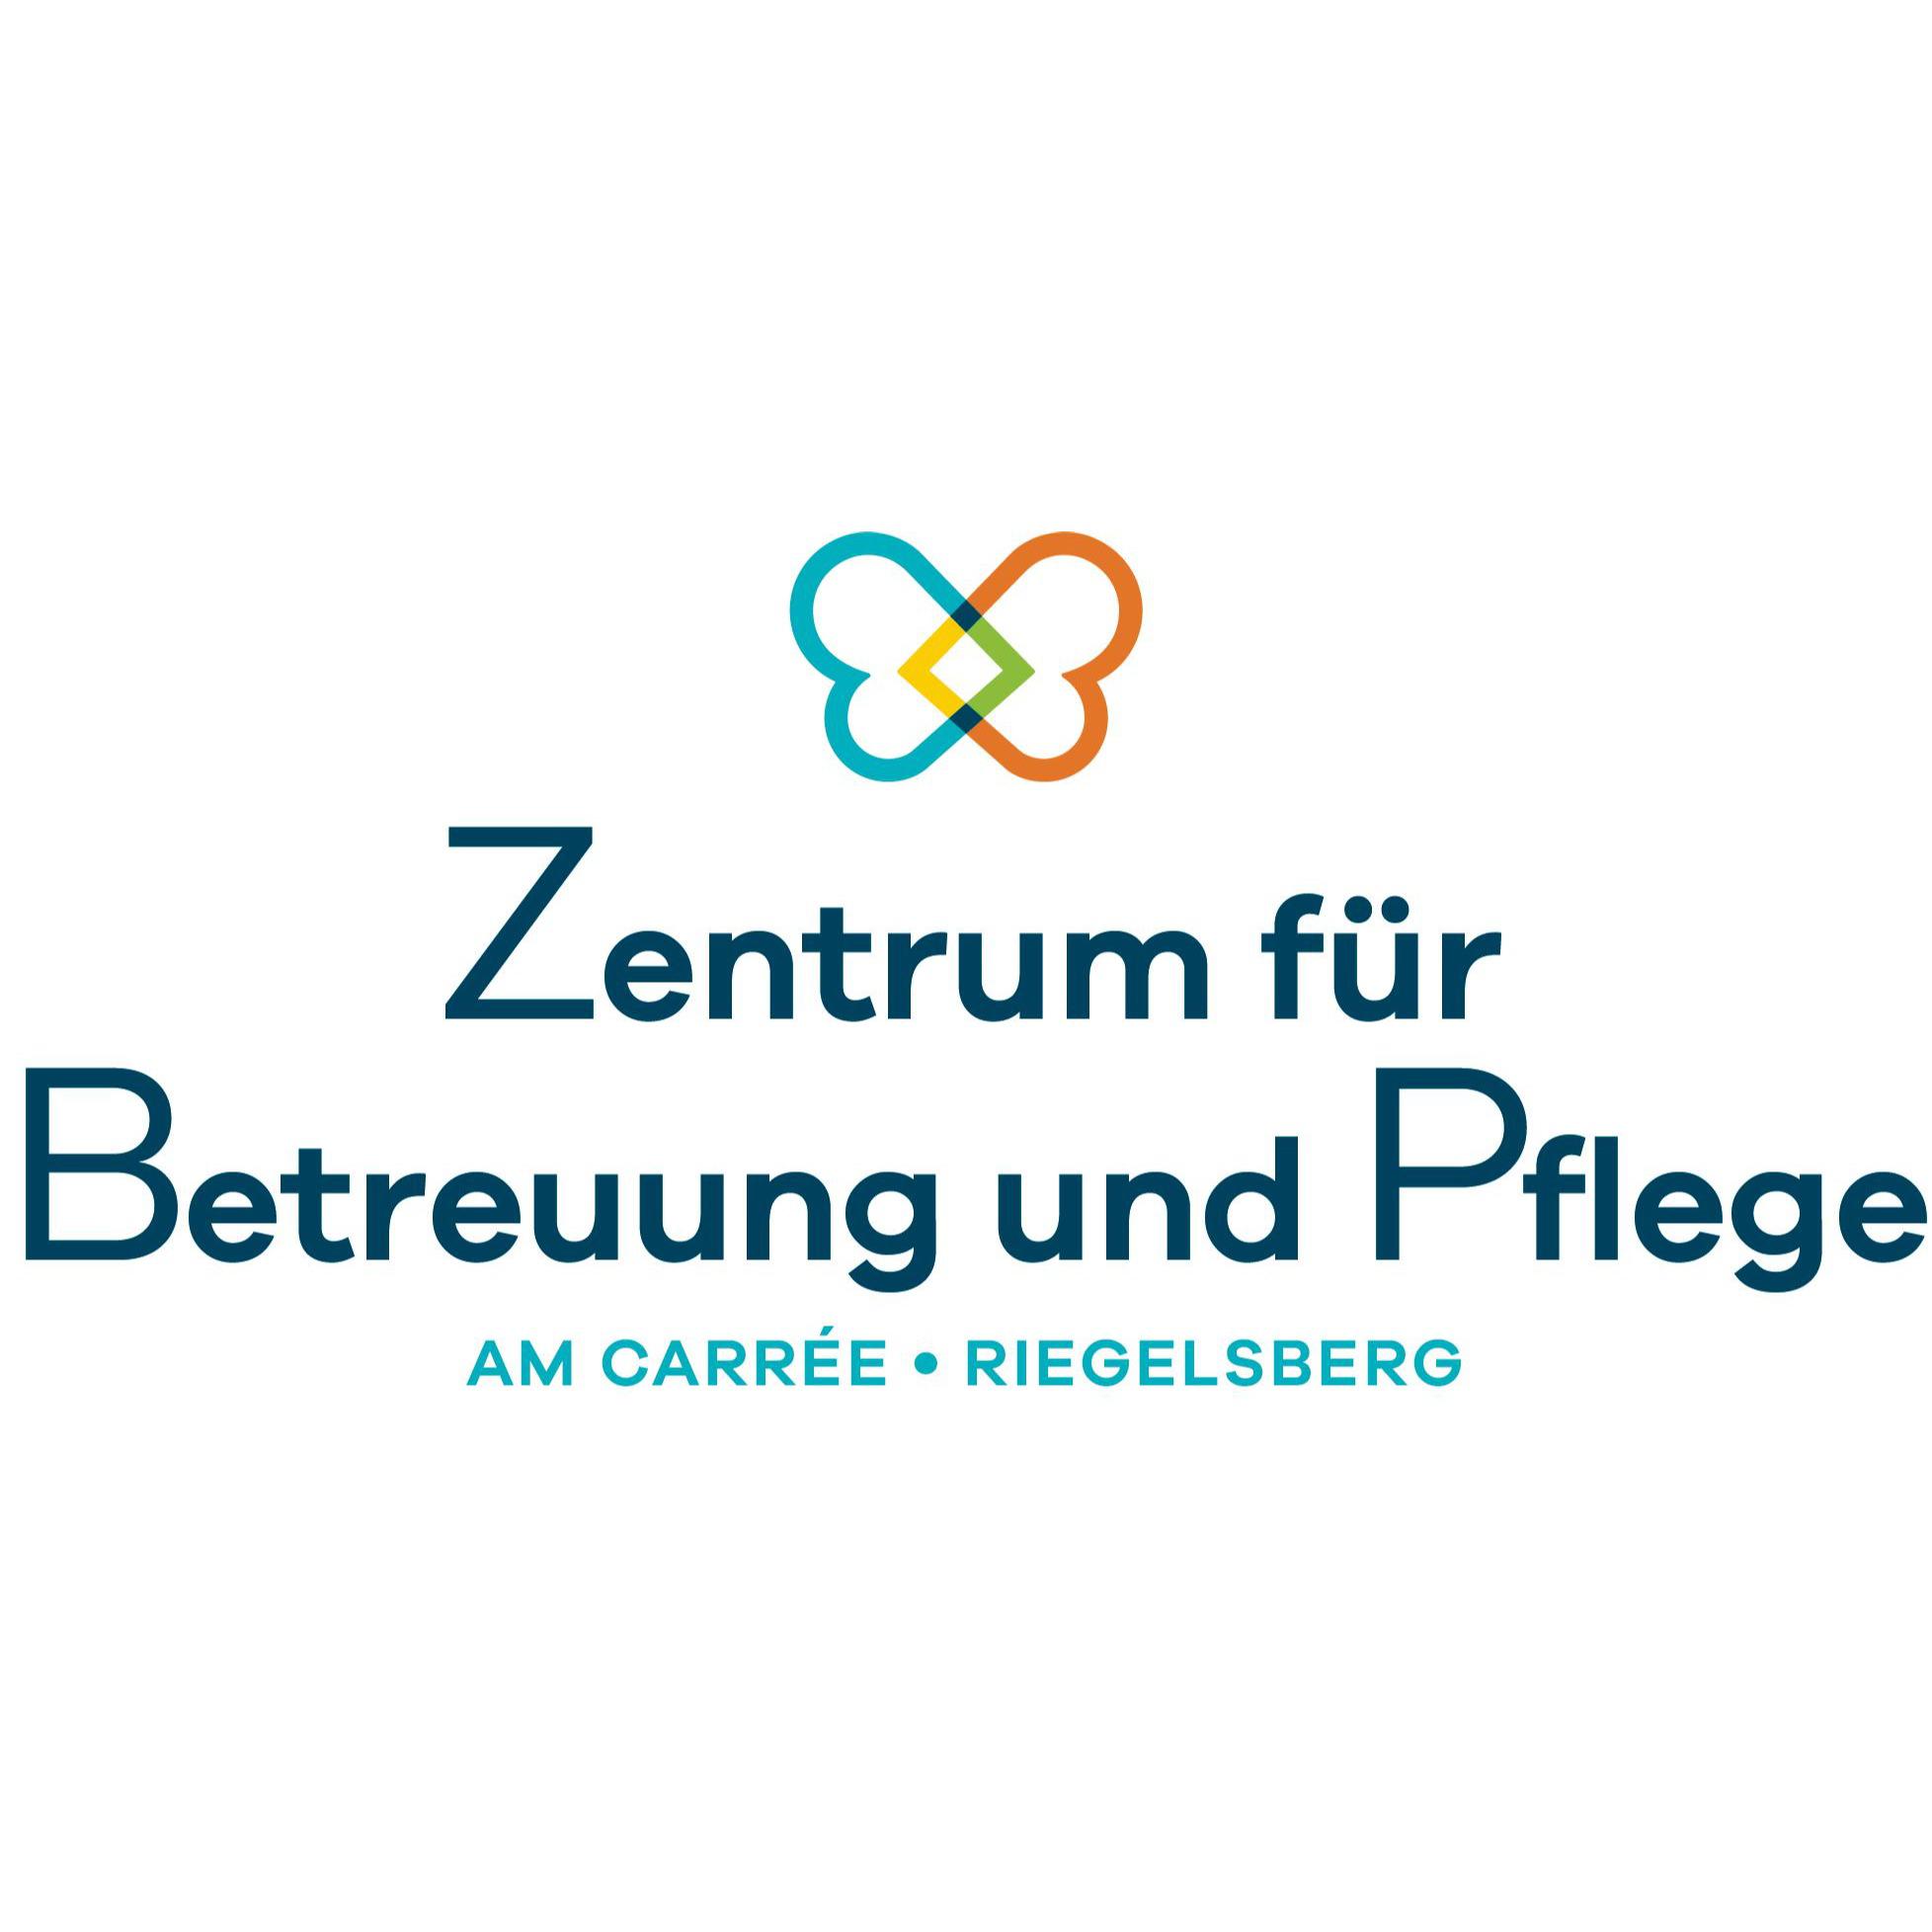 Zentrum für Betreuung und Pflege am Carree Riegelsberg Logo